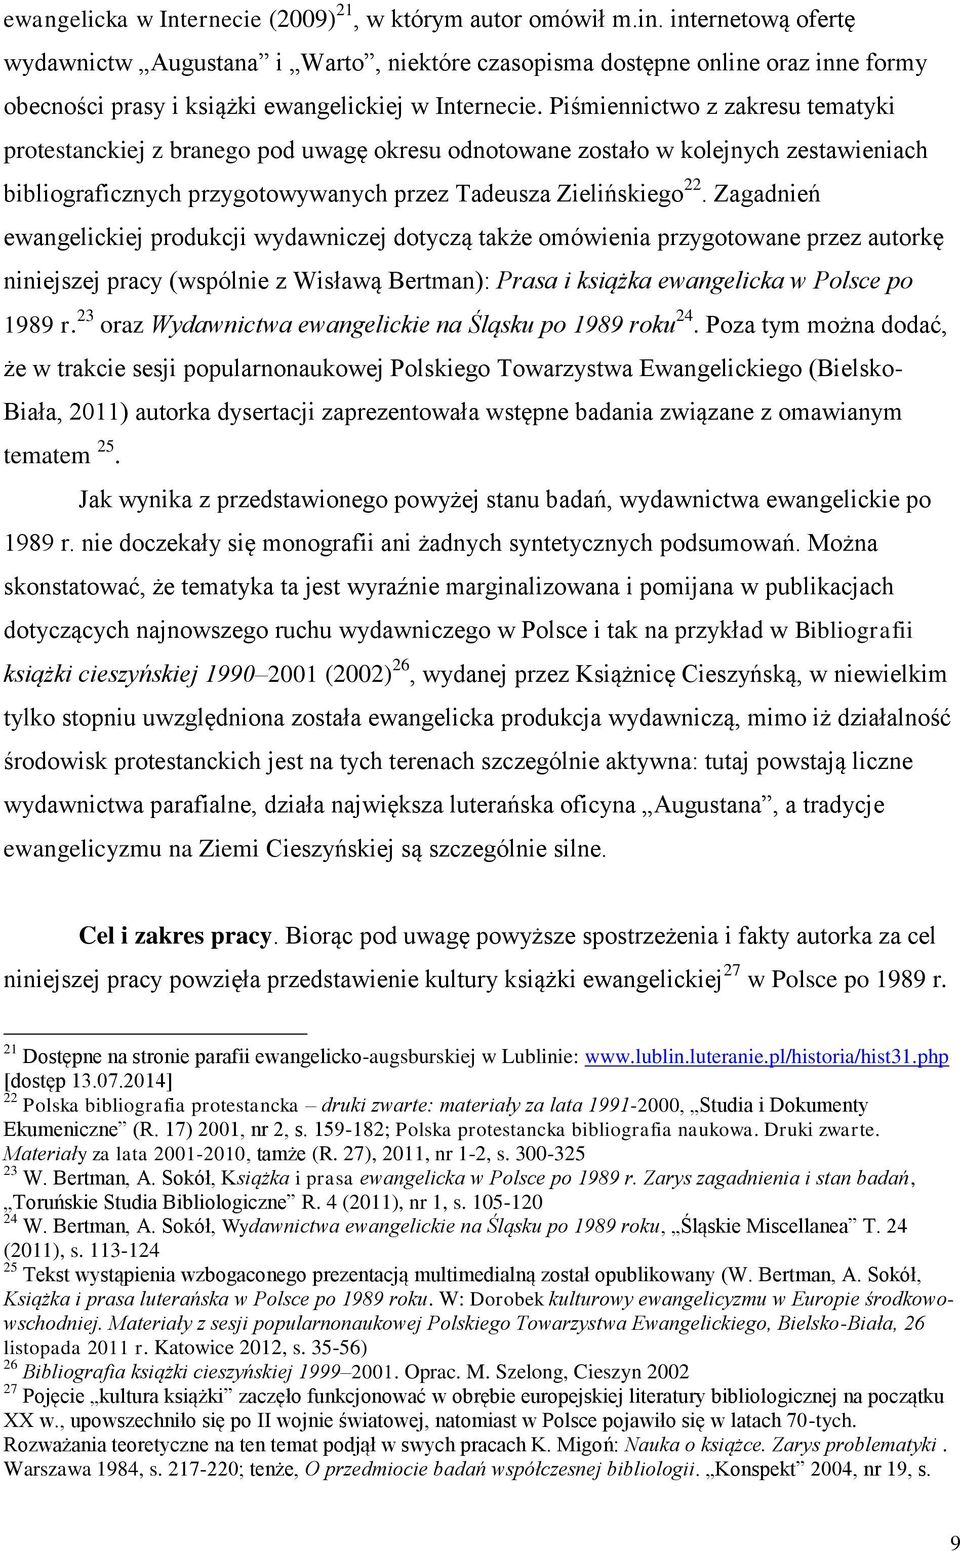 Piśmiennictwo z zakresu tematyki protestanckiej z branego pod uwagę okresu odnotowane zostało w kolejnych zestawieniach bibliograficznych przygotowywanych przez Tadeusza Zielińskiego 22.